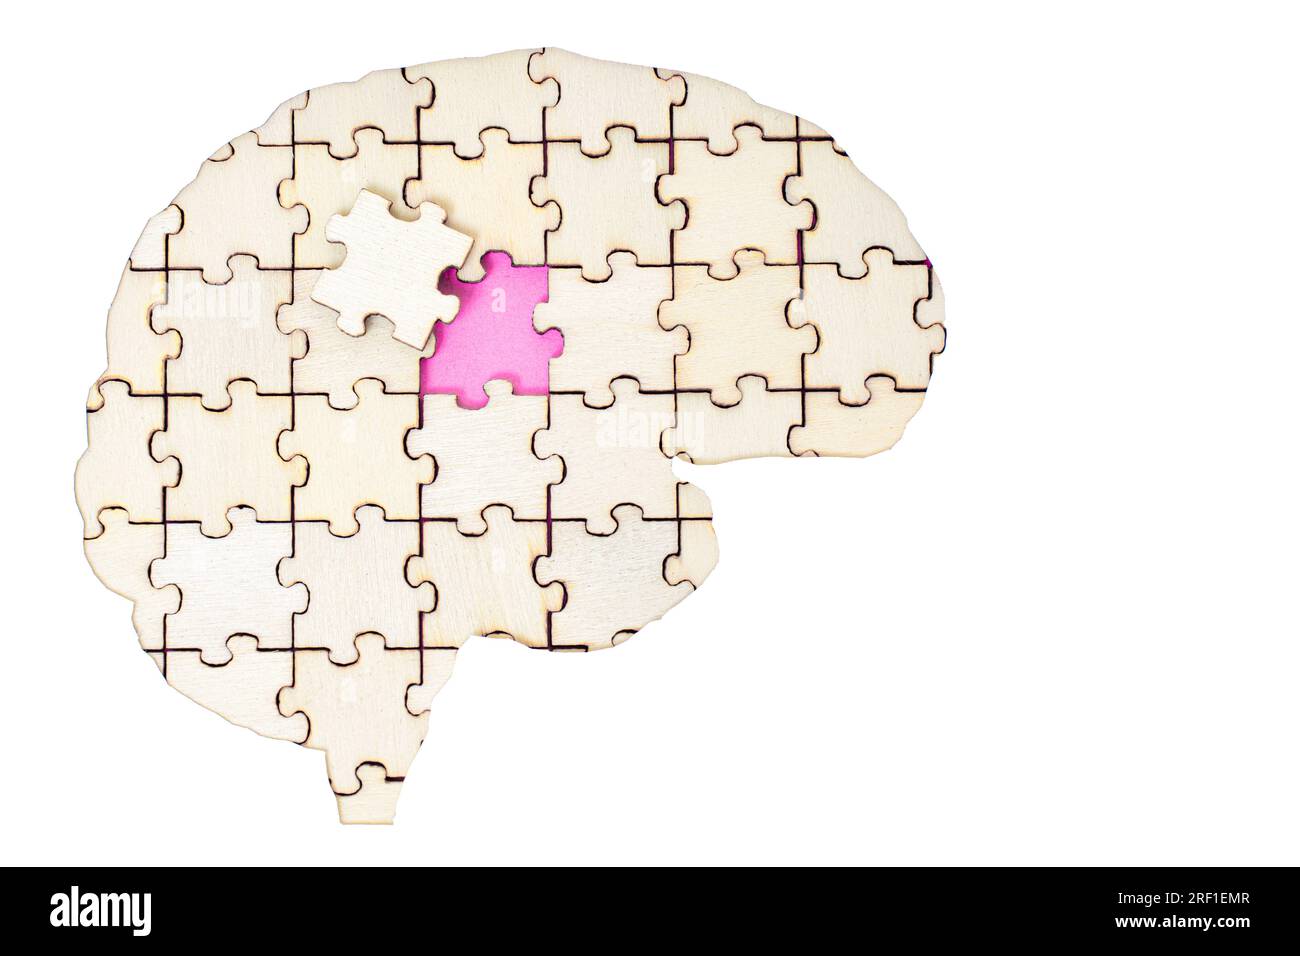 Pièces de puzzle assemblées dans une forme de cerveau humain isolé sur fond blanc avec la pièce finale à mettre en place. Compléter le puzzle mental Banque D'Images